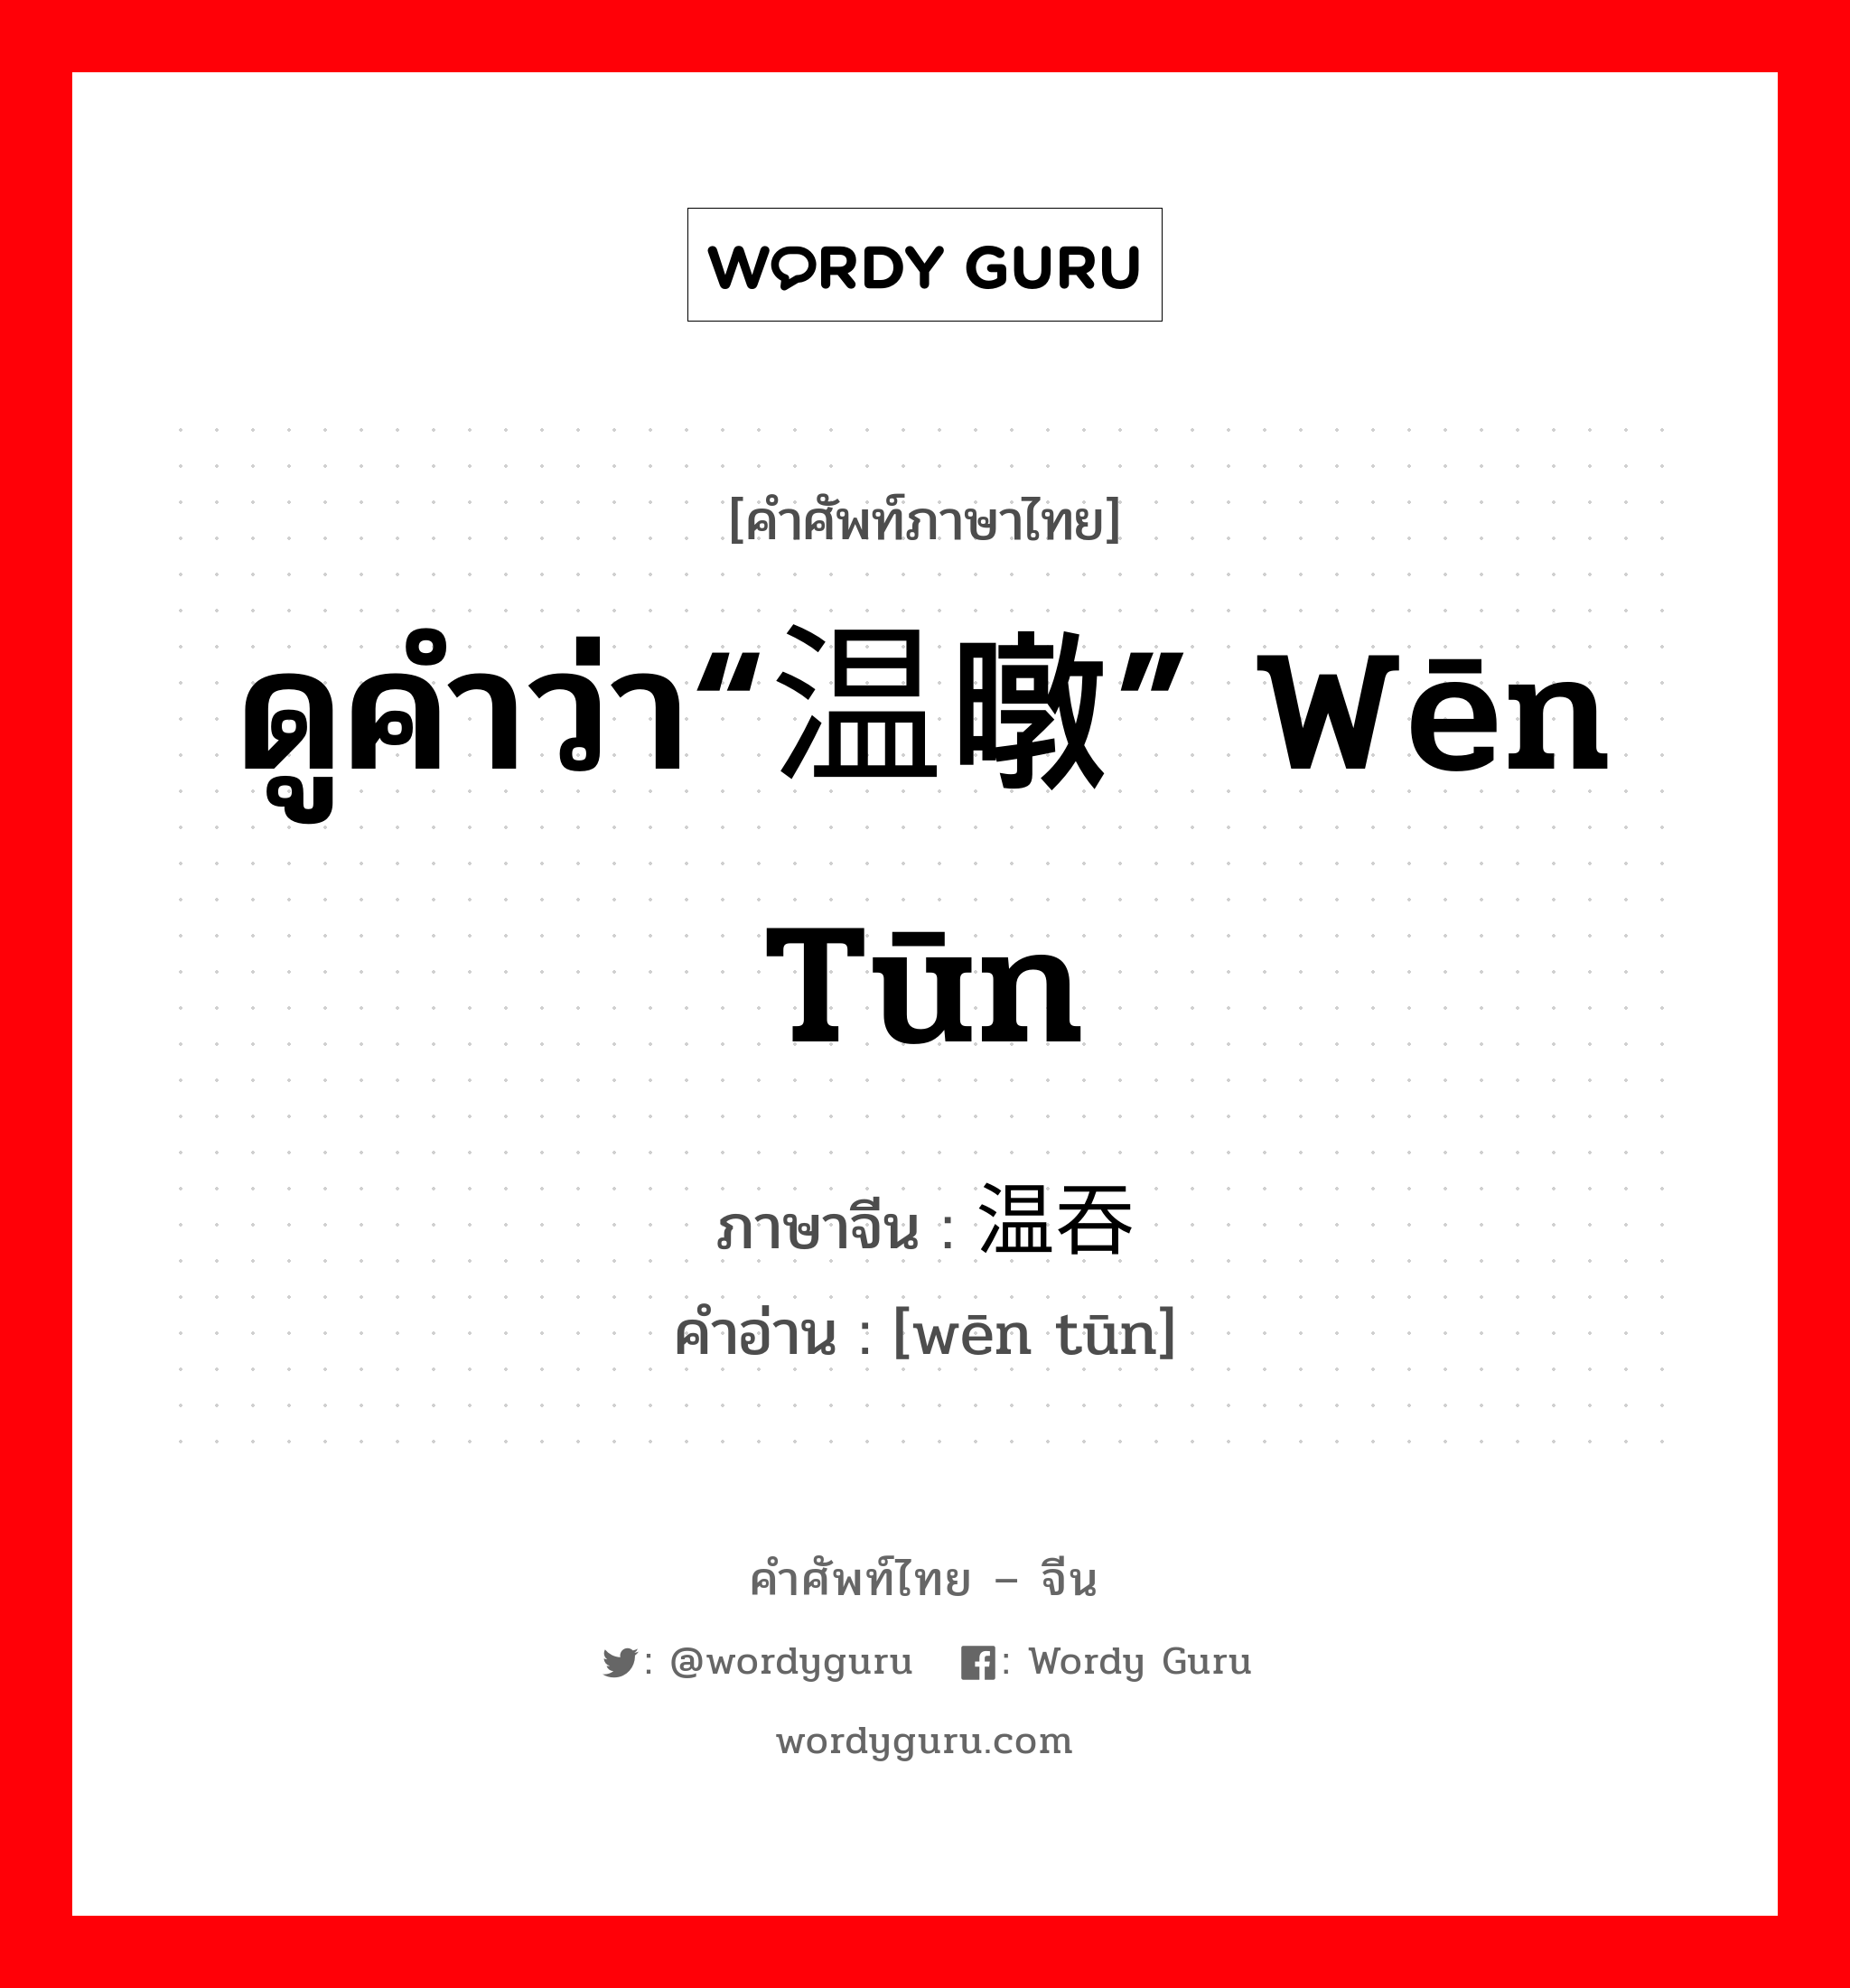 ดูคำว่า“温暾” wēn tūn ภาษาจีนคืออะไร, คำศัพท์ภาษาไทย - จีน ดูคำว่า“温暾” wēn tūn ภาษาจีน 温吞 คำอ่าน [wēn tūn]